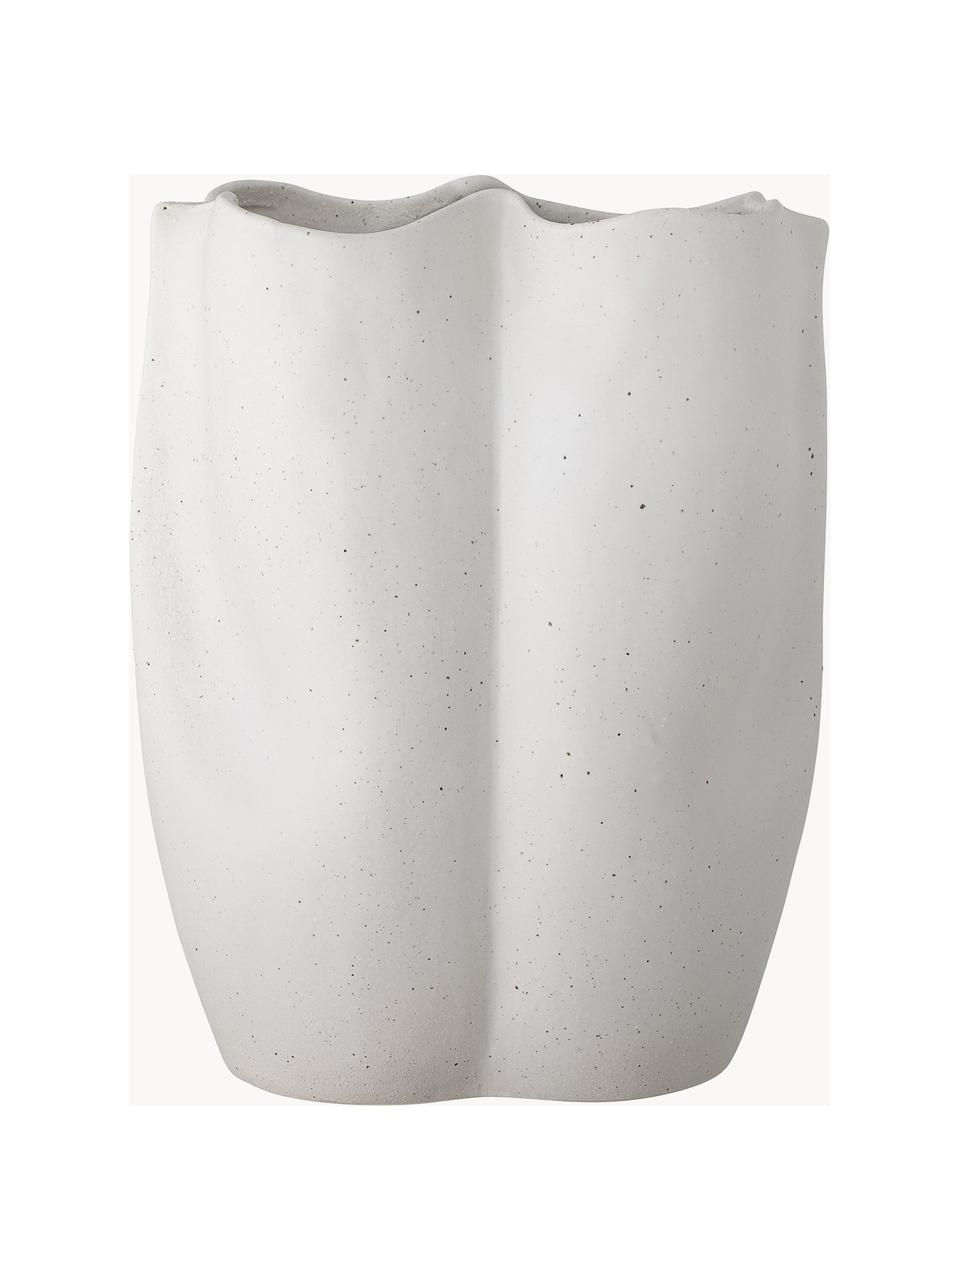 Kameninová váza v organickém tvaru Elira, V 35 cm, Kamenina, Bílá, Š 27 cm, V 35 cm